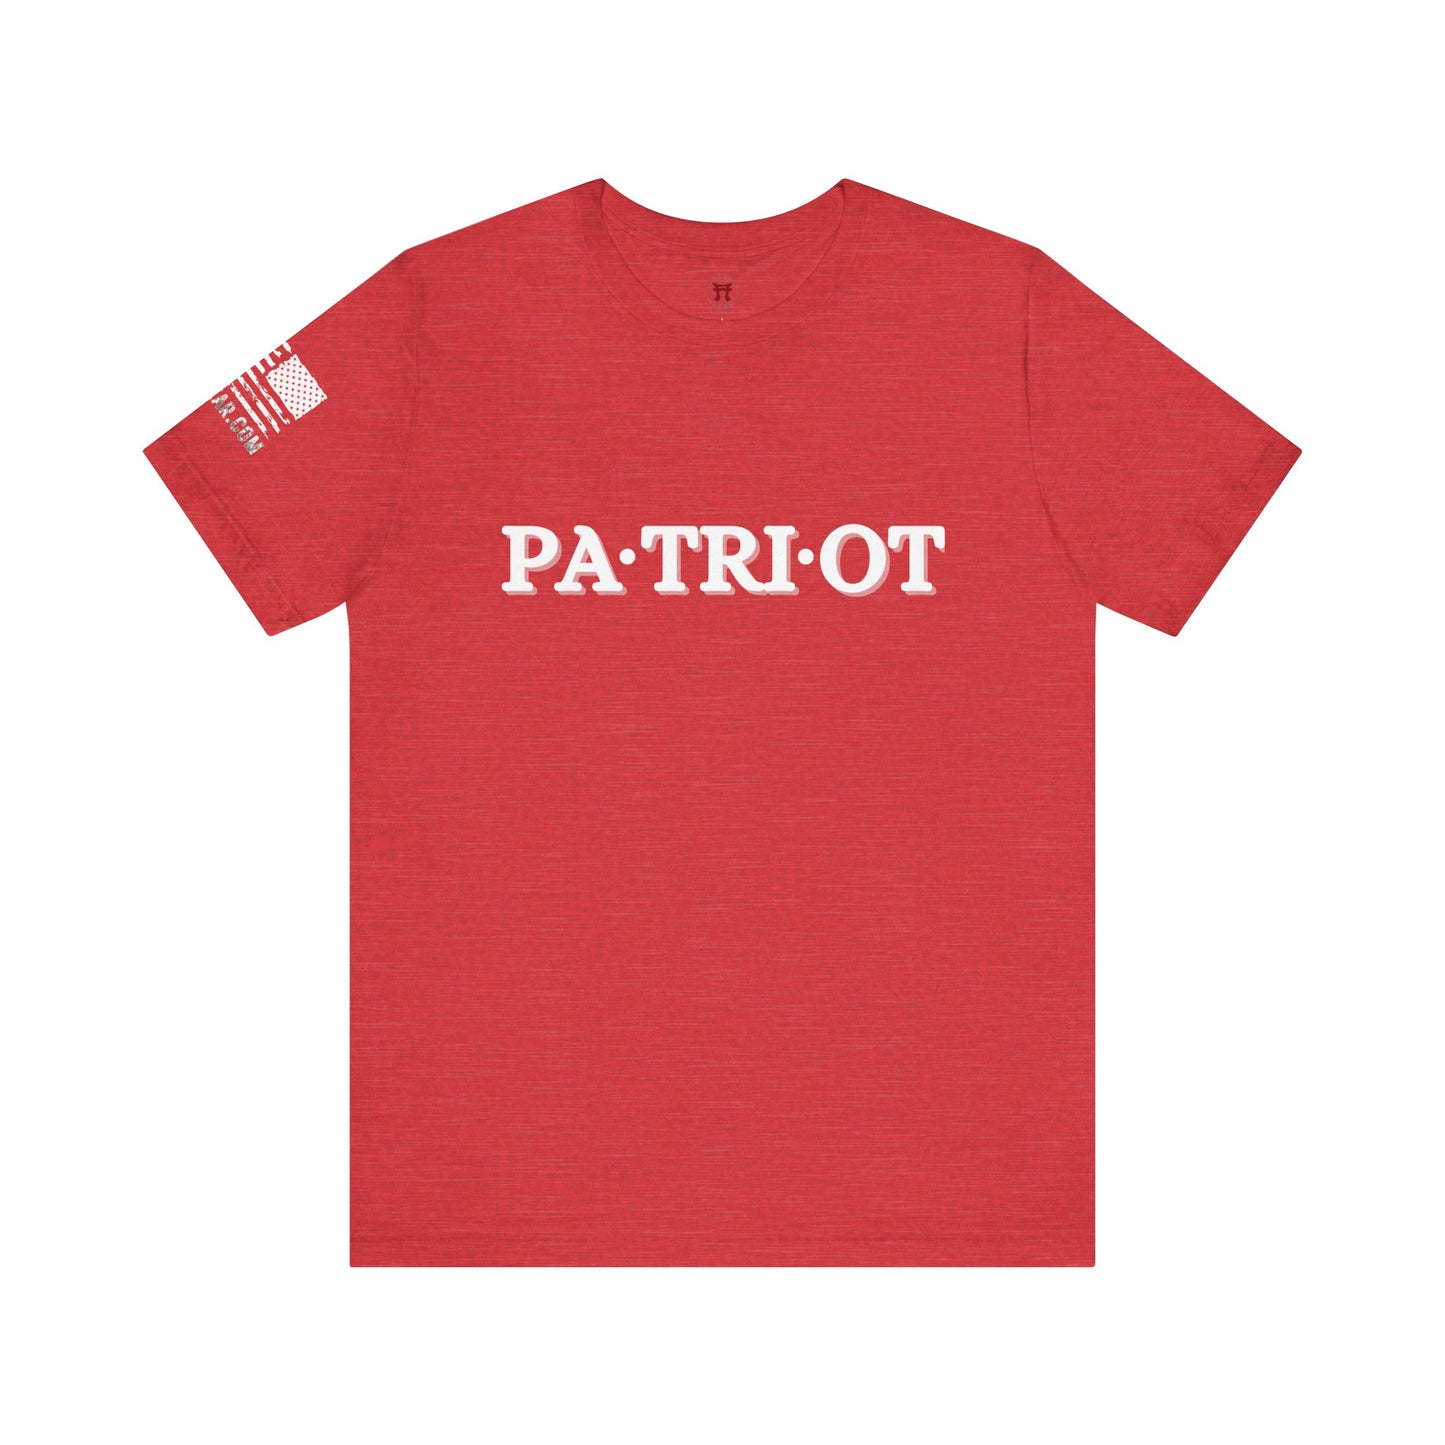 Rakkgear Patriot Short Sleeve Tee in red